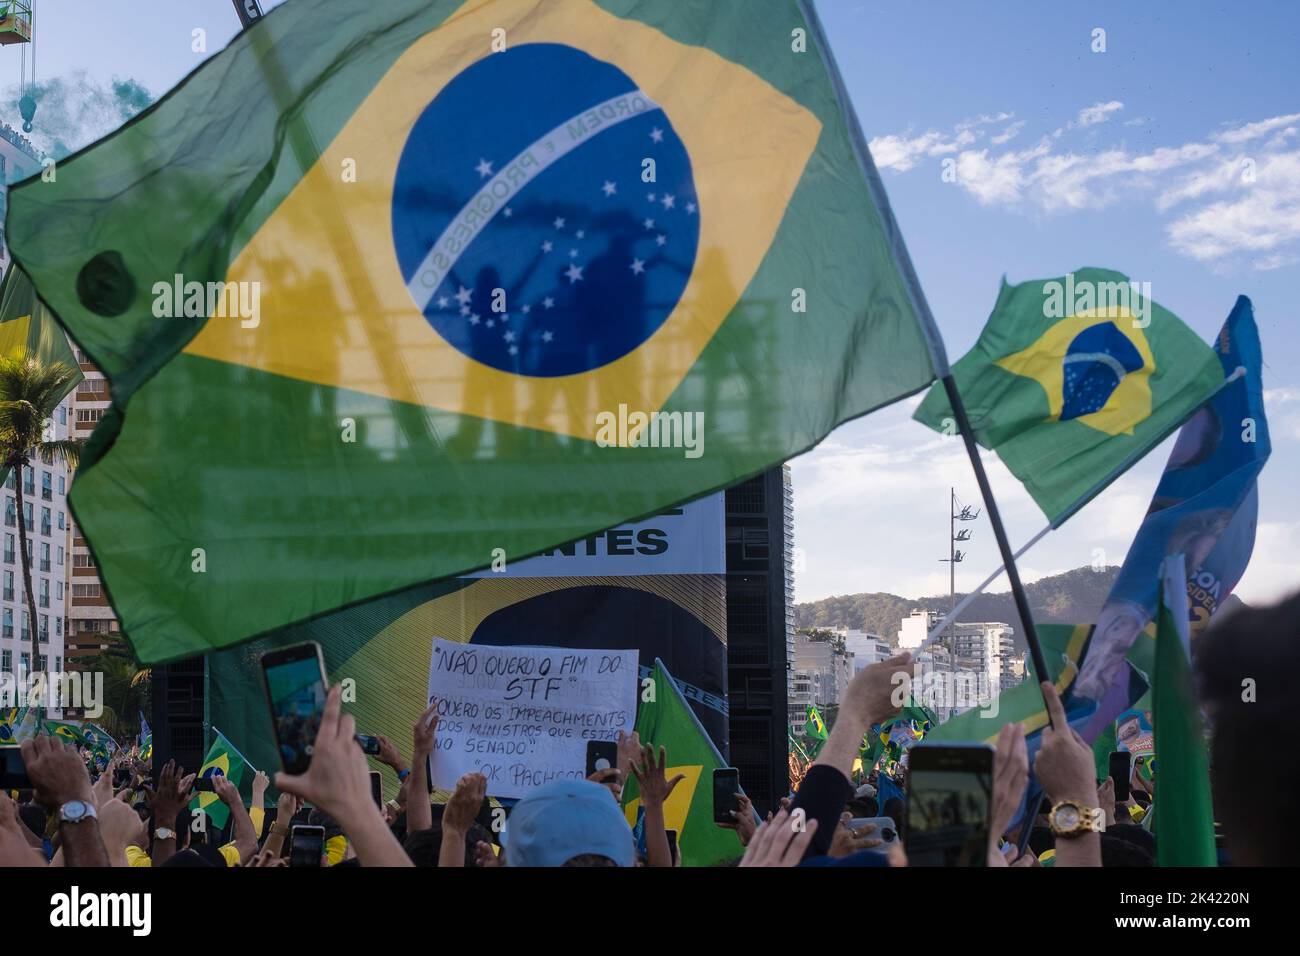 Les partisans de Bolsonaro tiennent une manifestation politique sur la plage de Copacabana à la date de la célébration des 200 ans d'indépendance du Brésil. Banque D'Images